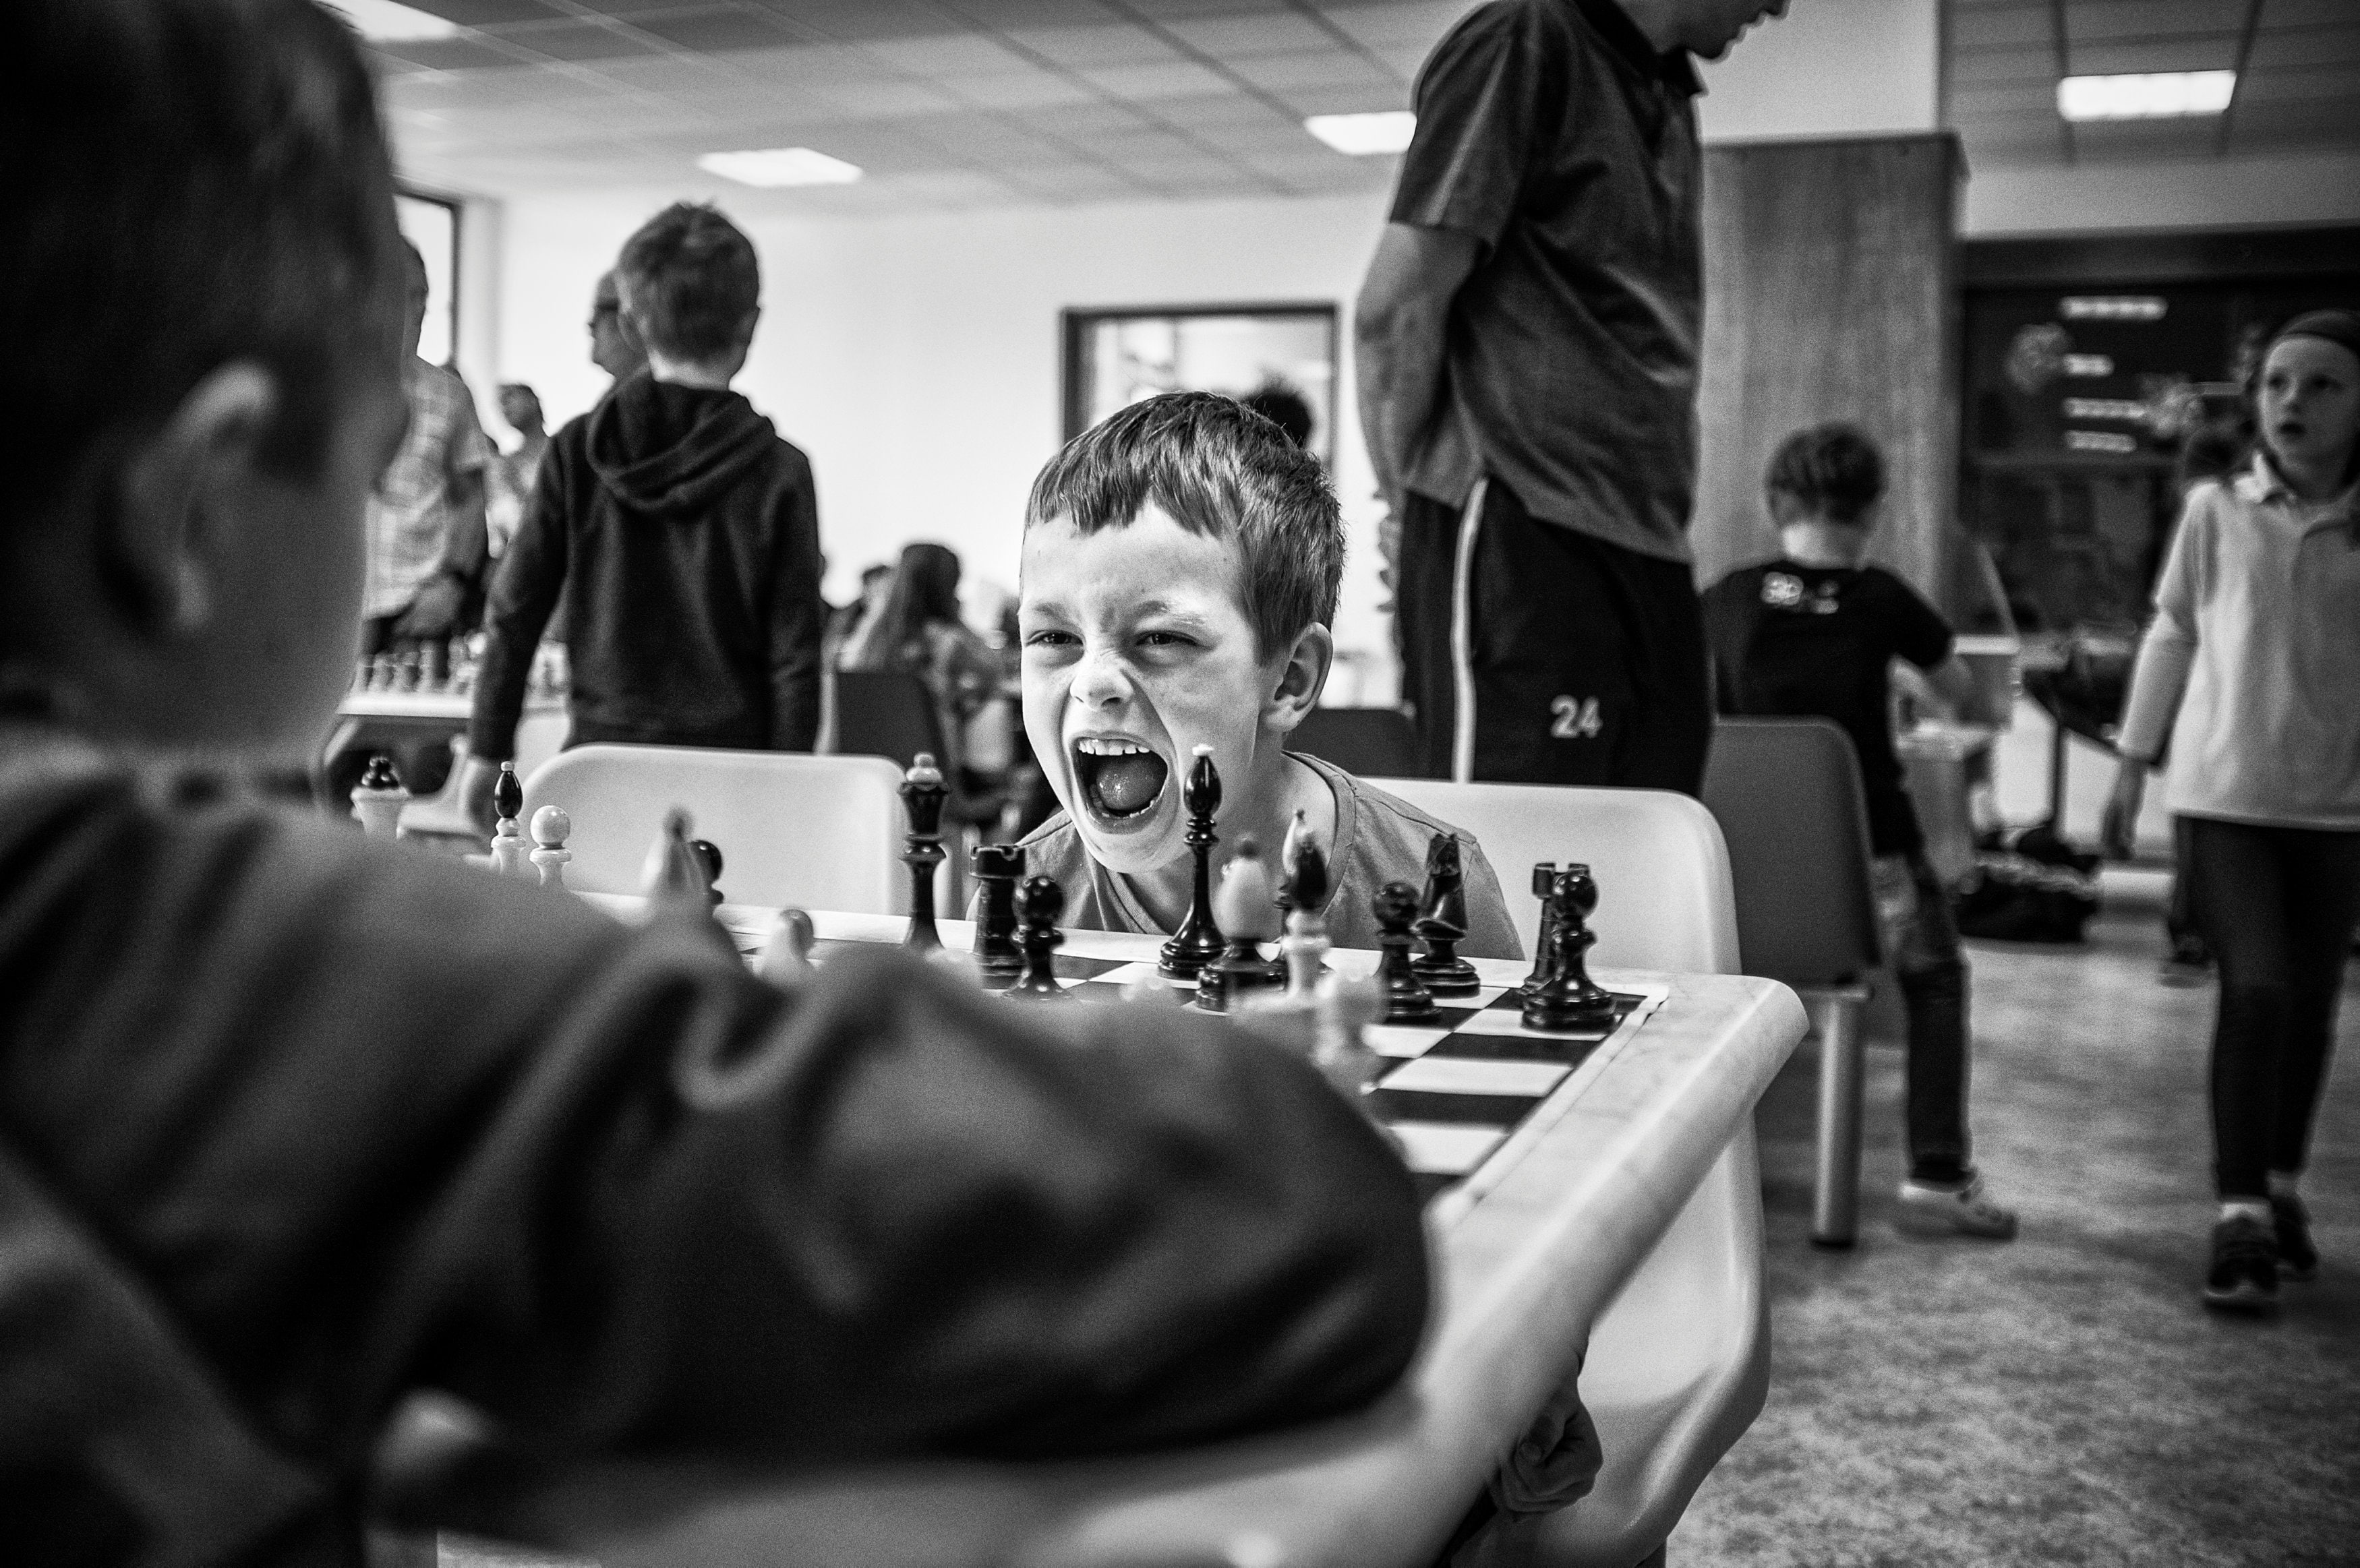 La emoción del ajedrez, premiada en el World Press Photo